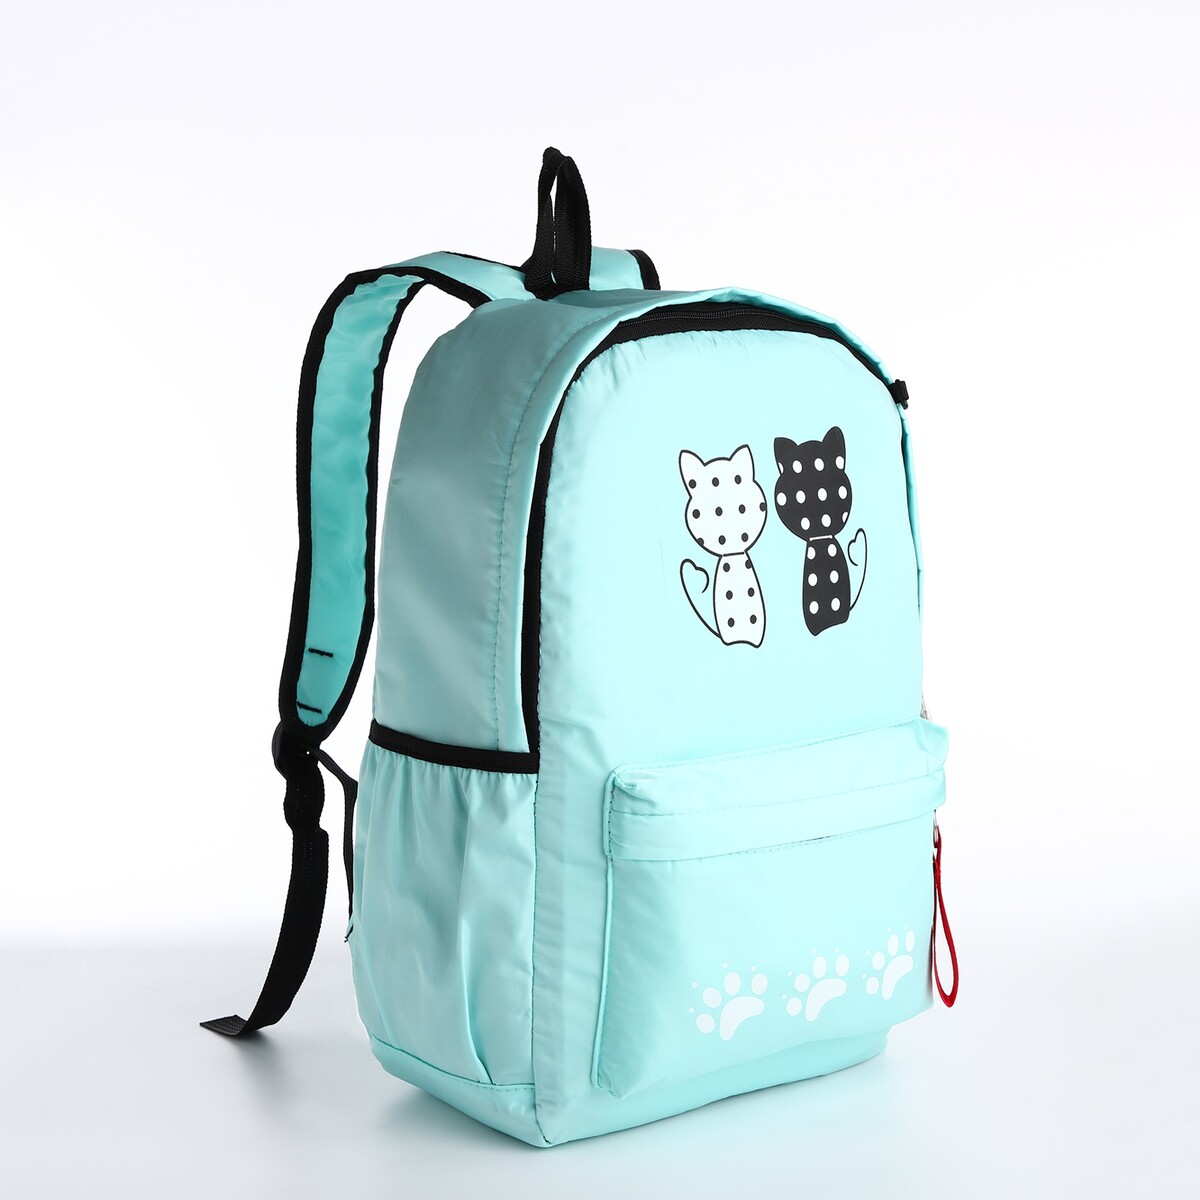 Рюкзак молодежный из текстиля, 3 кармана, кошелек, цвет мятный рюкзак школьный из текстиля 3 кармана бирюзовый